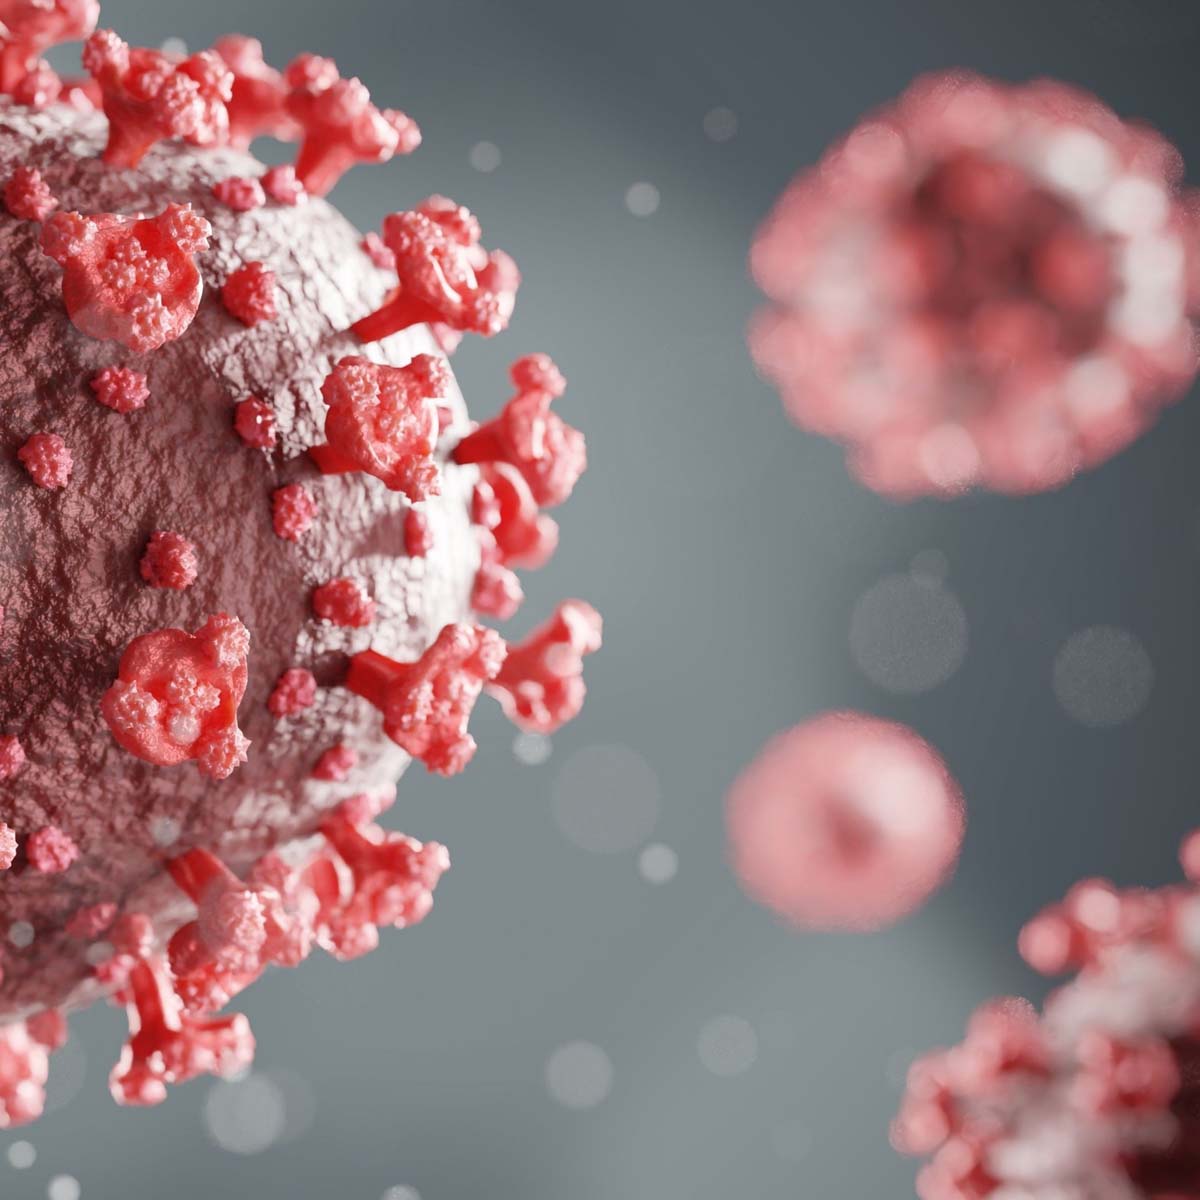 ÉLŐ - COVID-19 járványról érthetően: gyógyszeres kezelés, biotechnológiai háttér és az egészségügy kihívásai